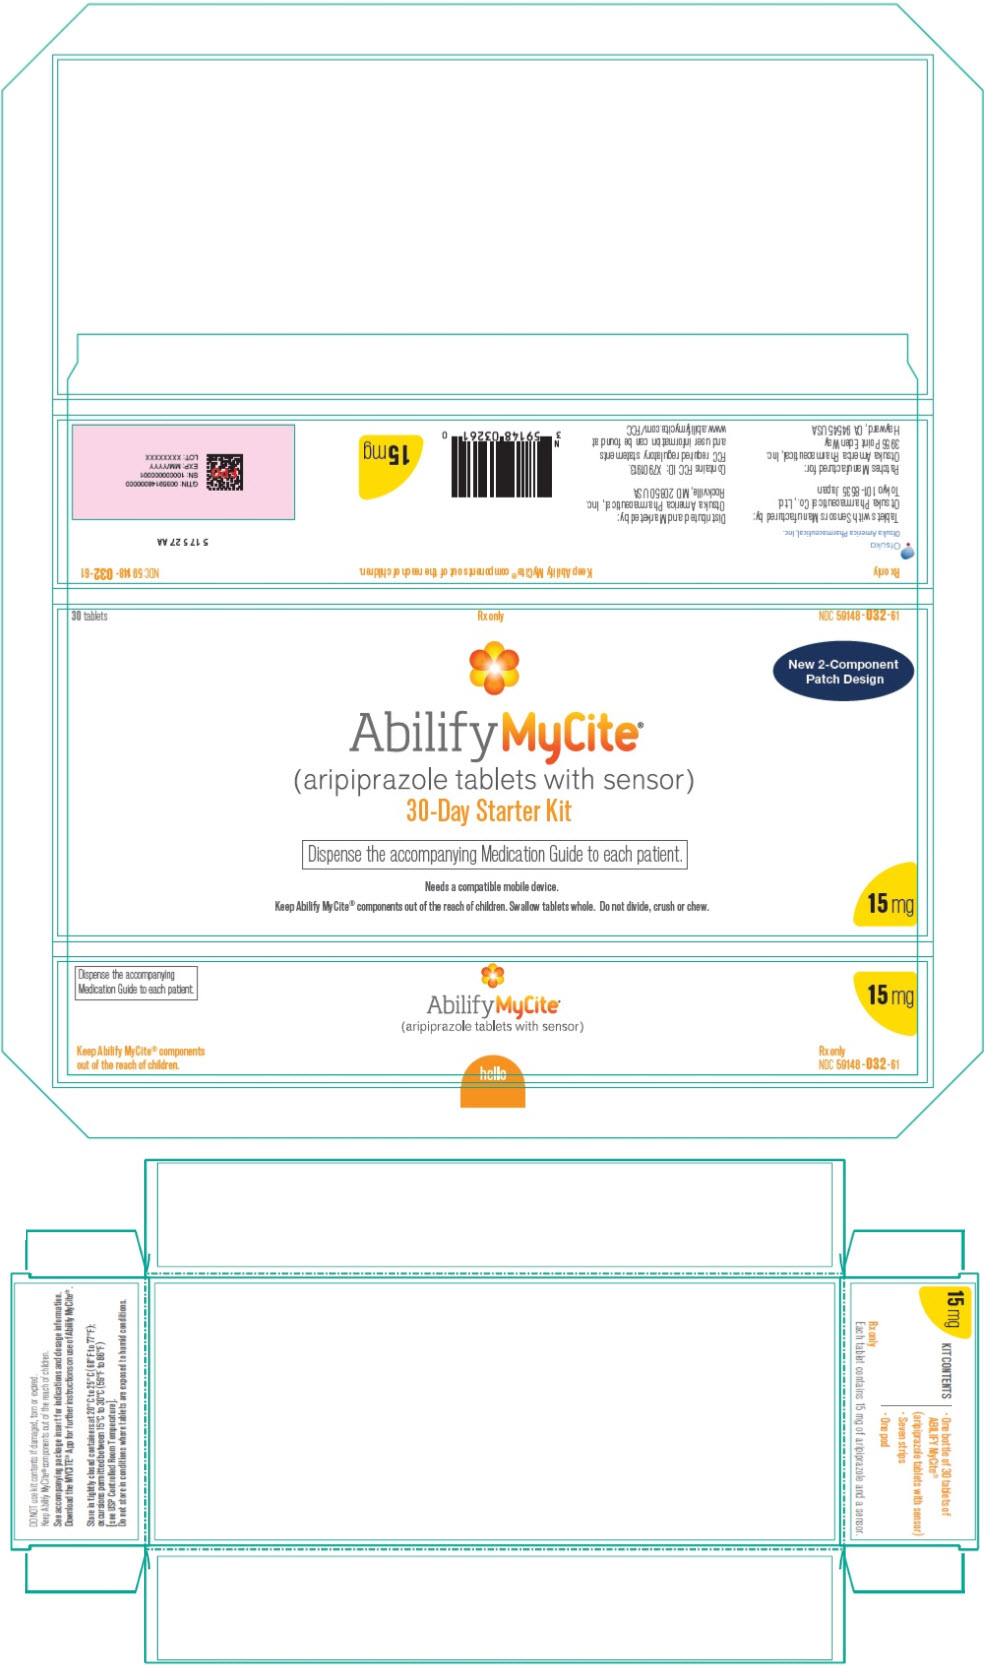 PRINCIPAL DISPLAY PANEL - Starter Kit Carton - 15 mg